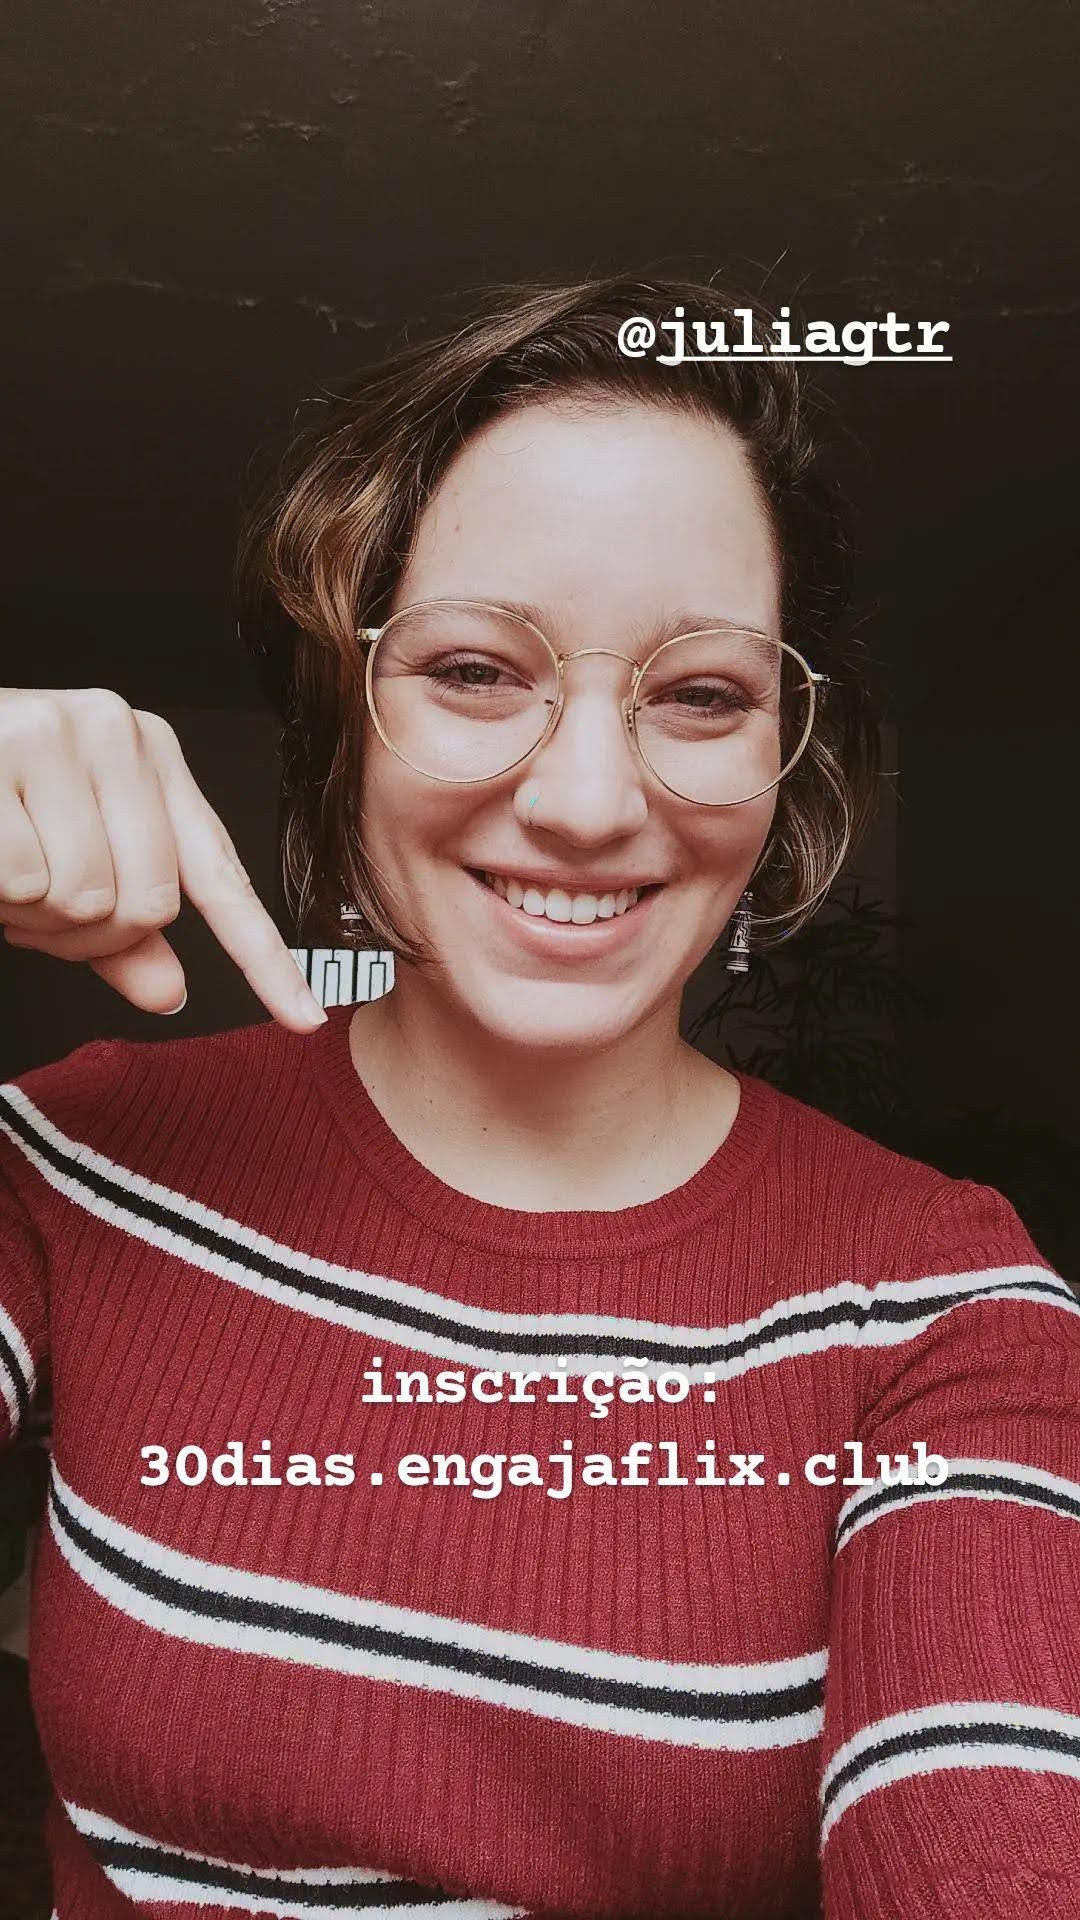 uma foto minha modo selfie usando uma blusinha de lã vermelha com listras pretas e brancas. tô sorrindo e apontando pra um texto que diz: inscrição: 30dias.engajaflix.club. 